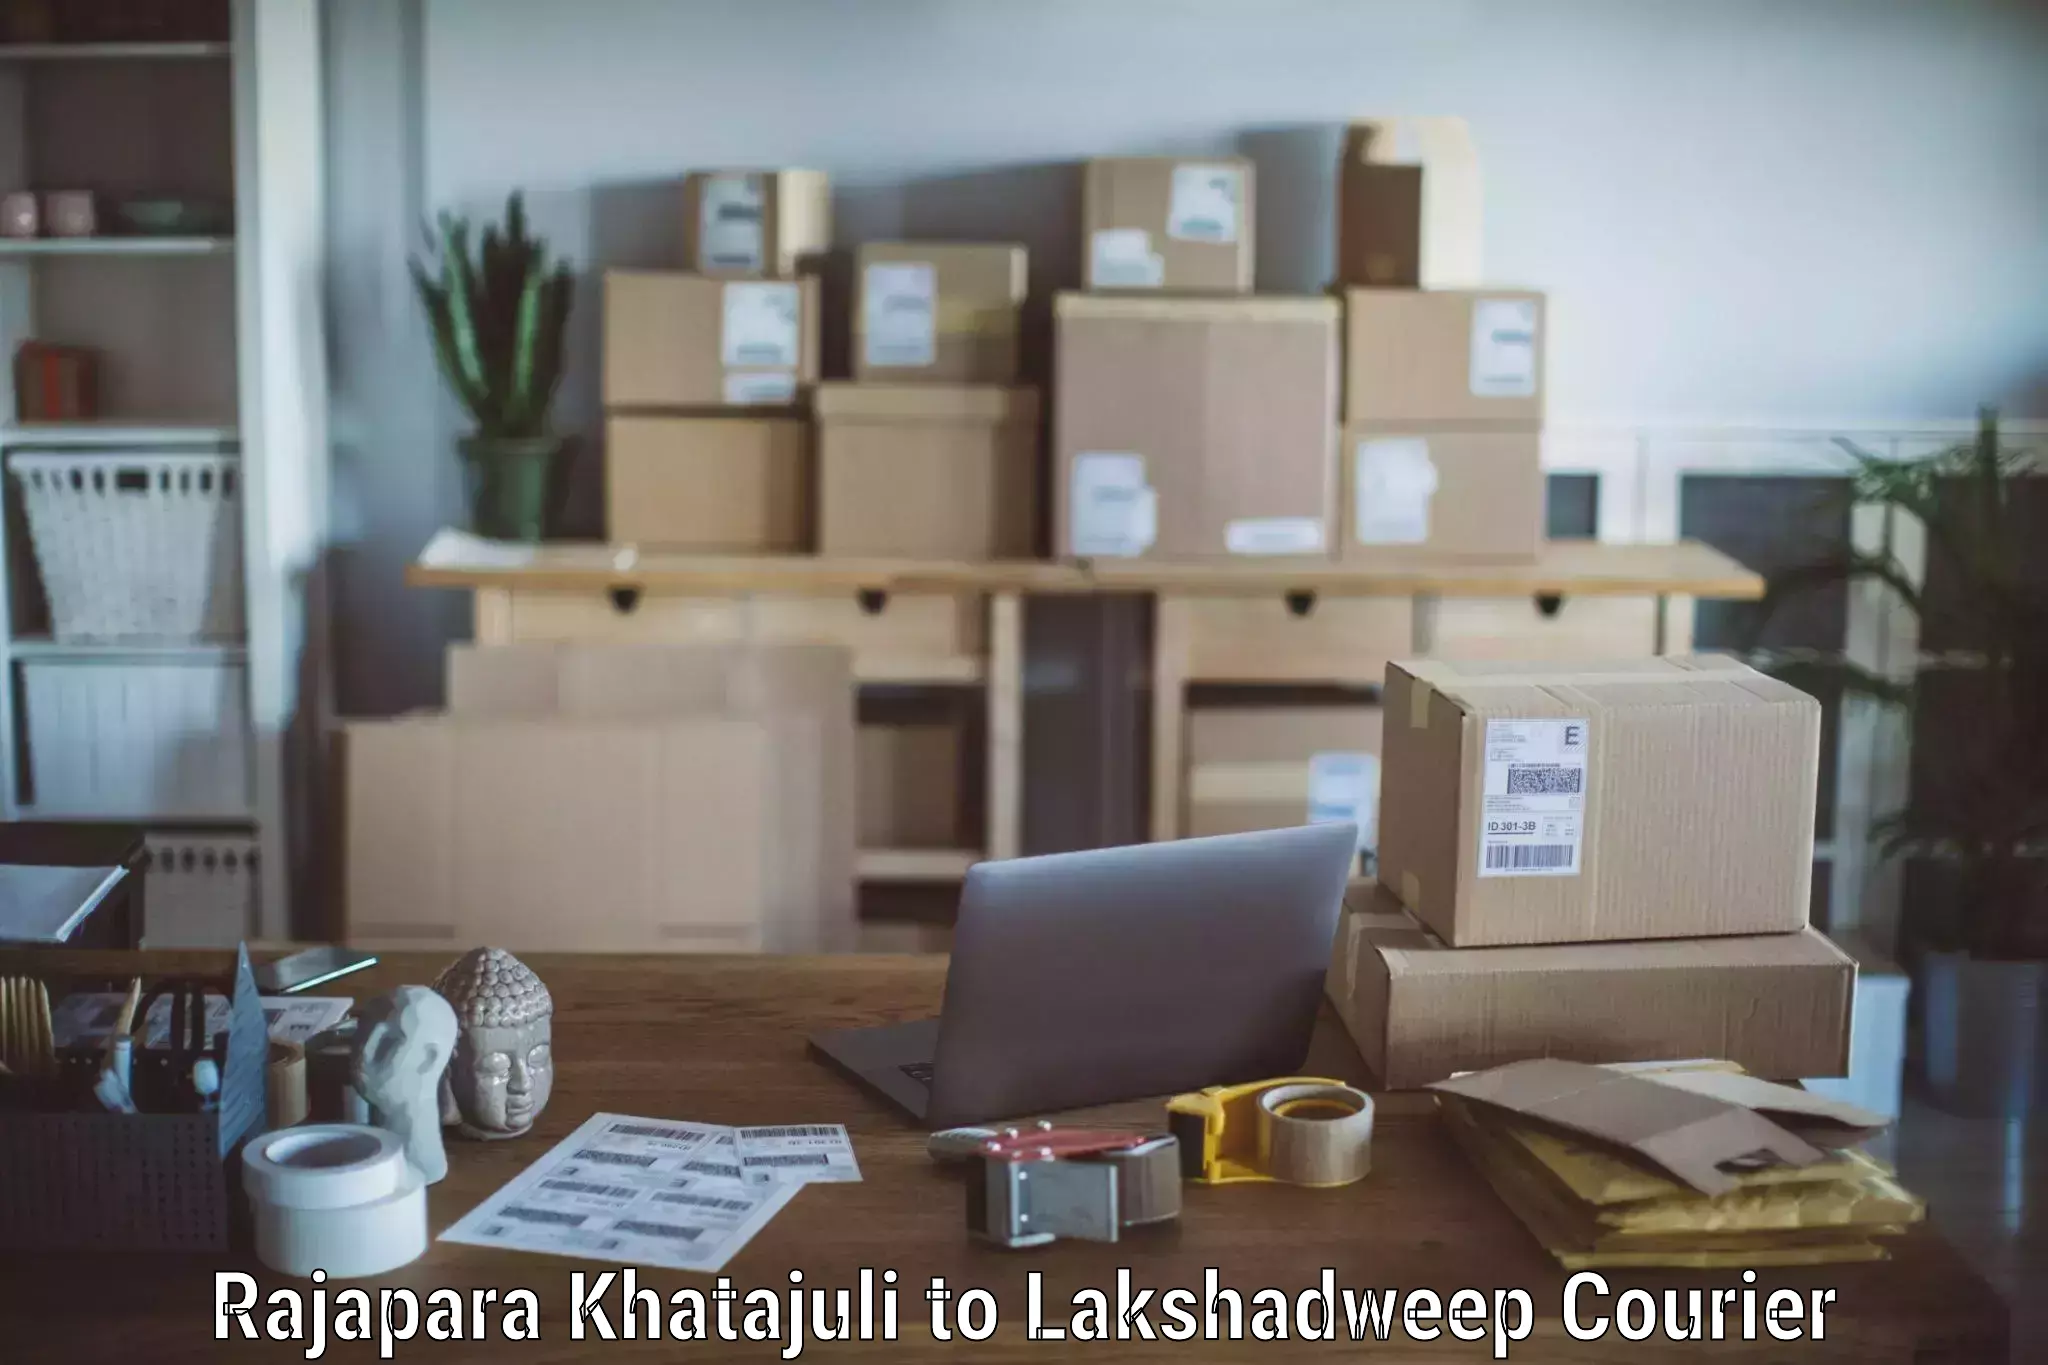 Furniture transport services Rajapara Khatajuli to Lakshadweep